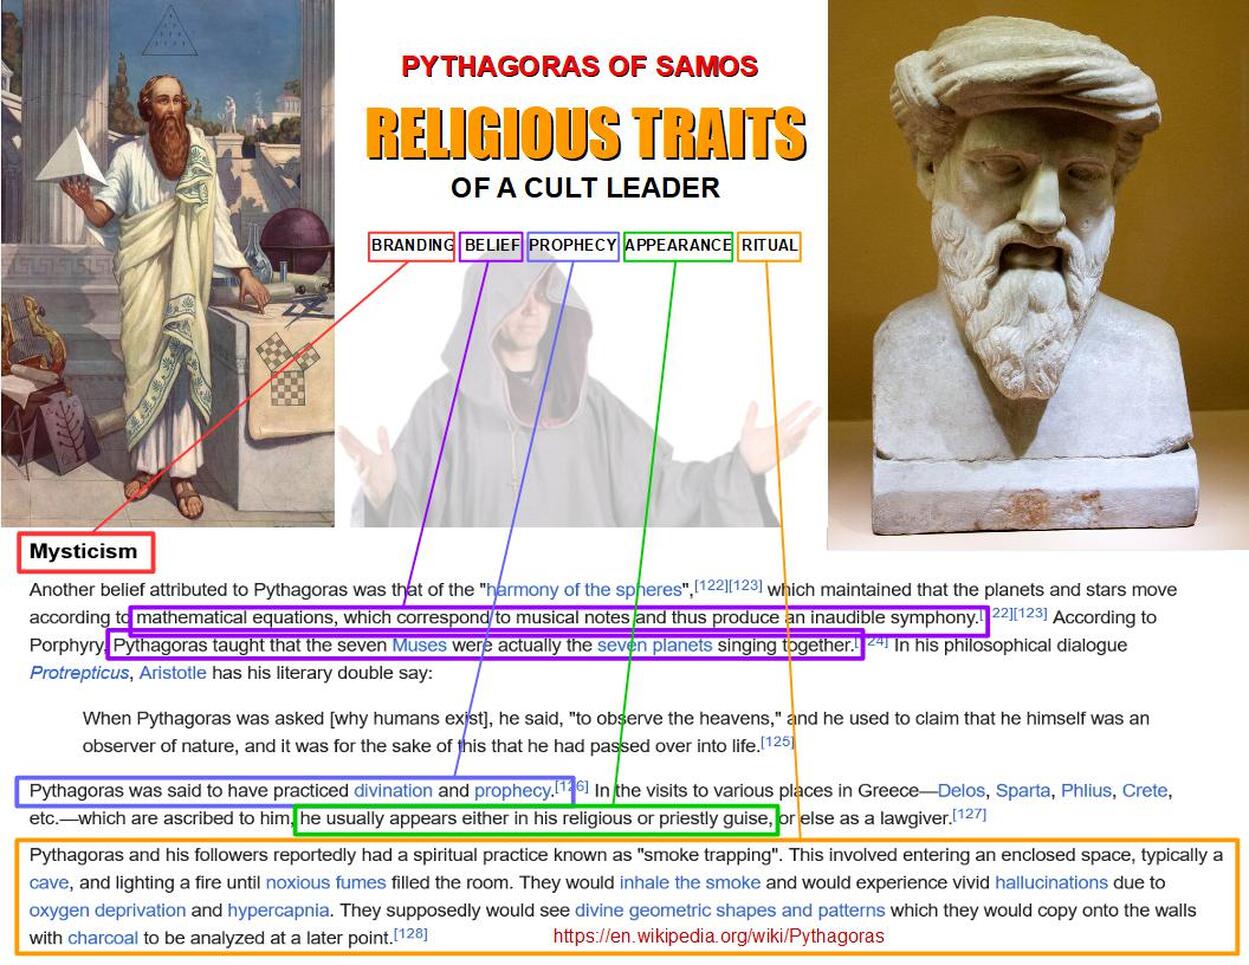 Pythagoras os Samos Religious Traits of a Cult Leader